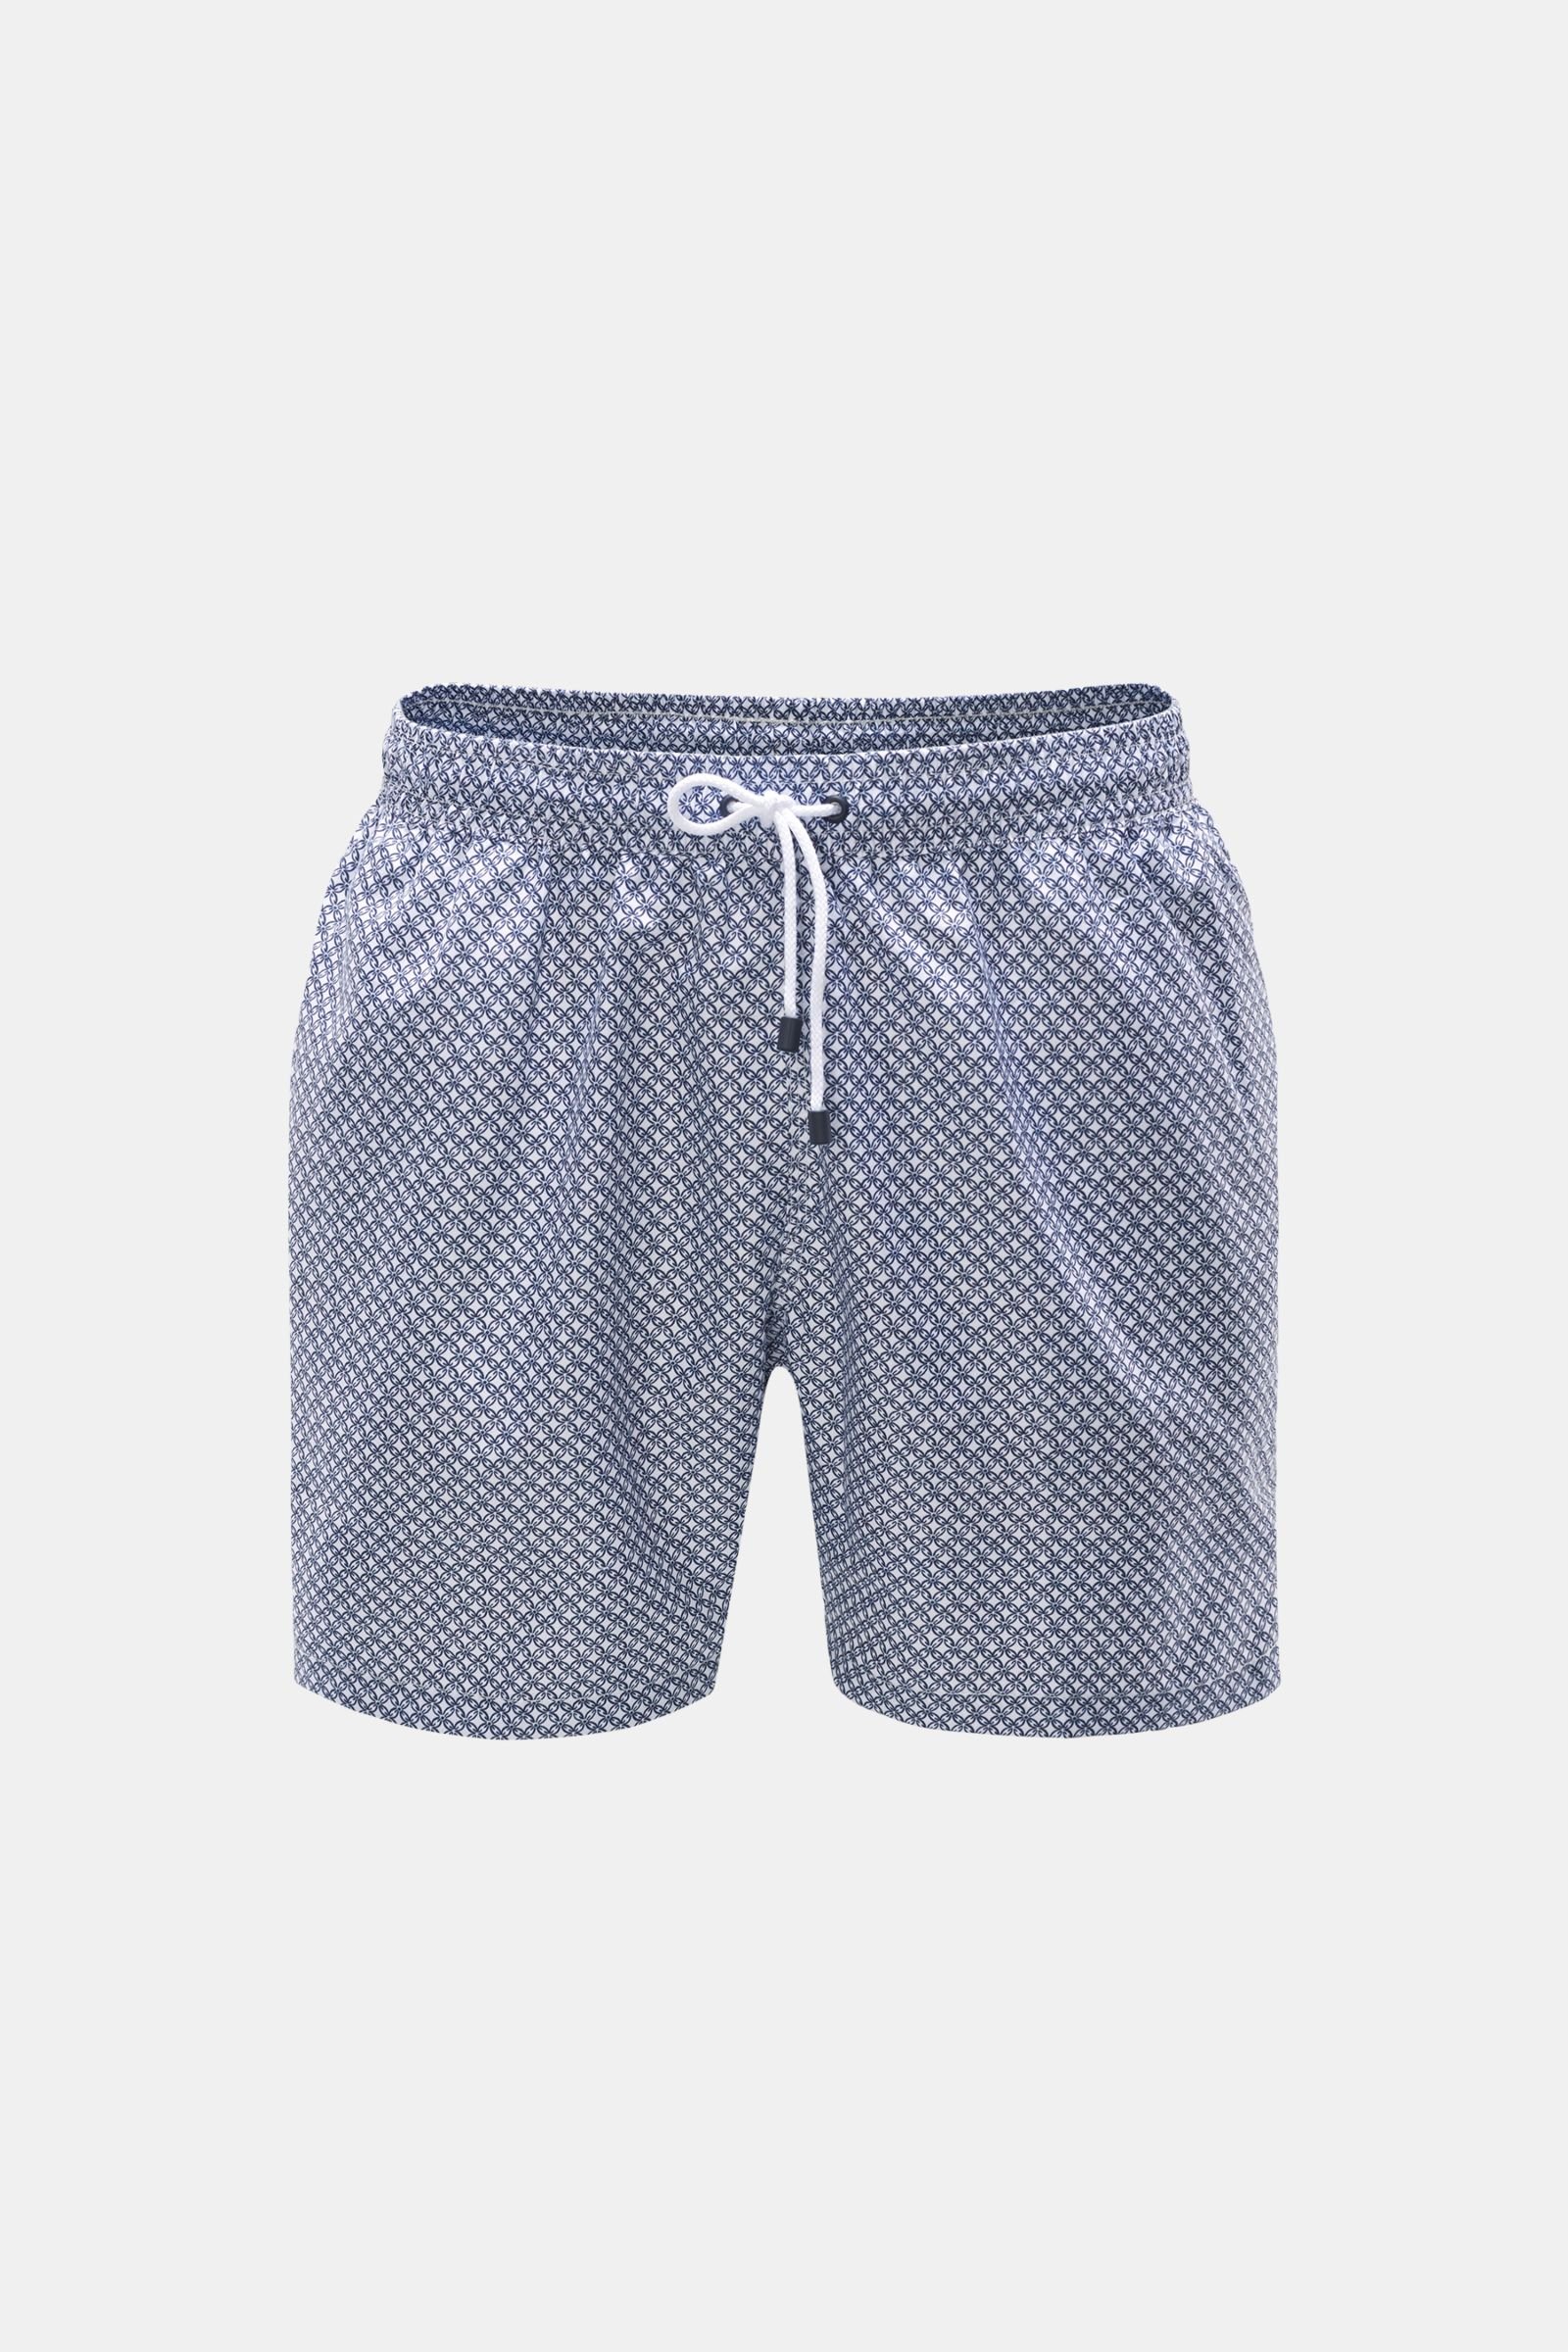 Swim shorts white/navy patterned